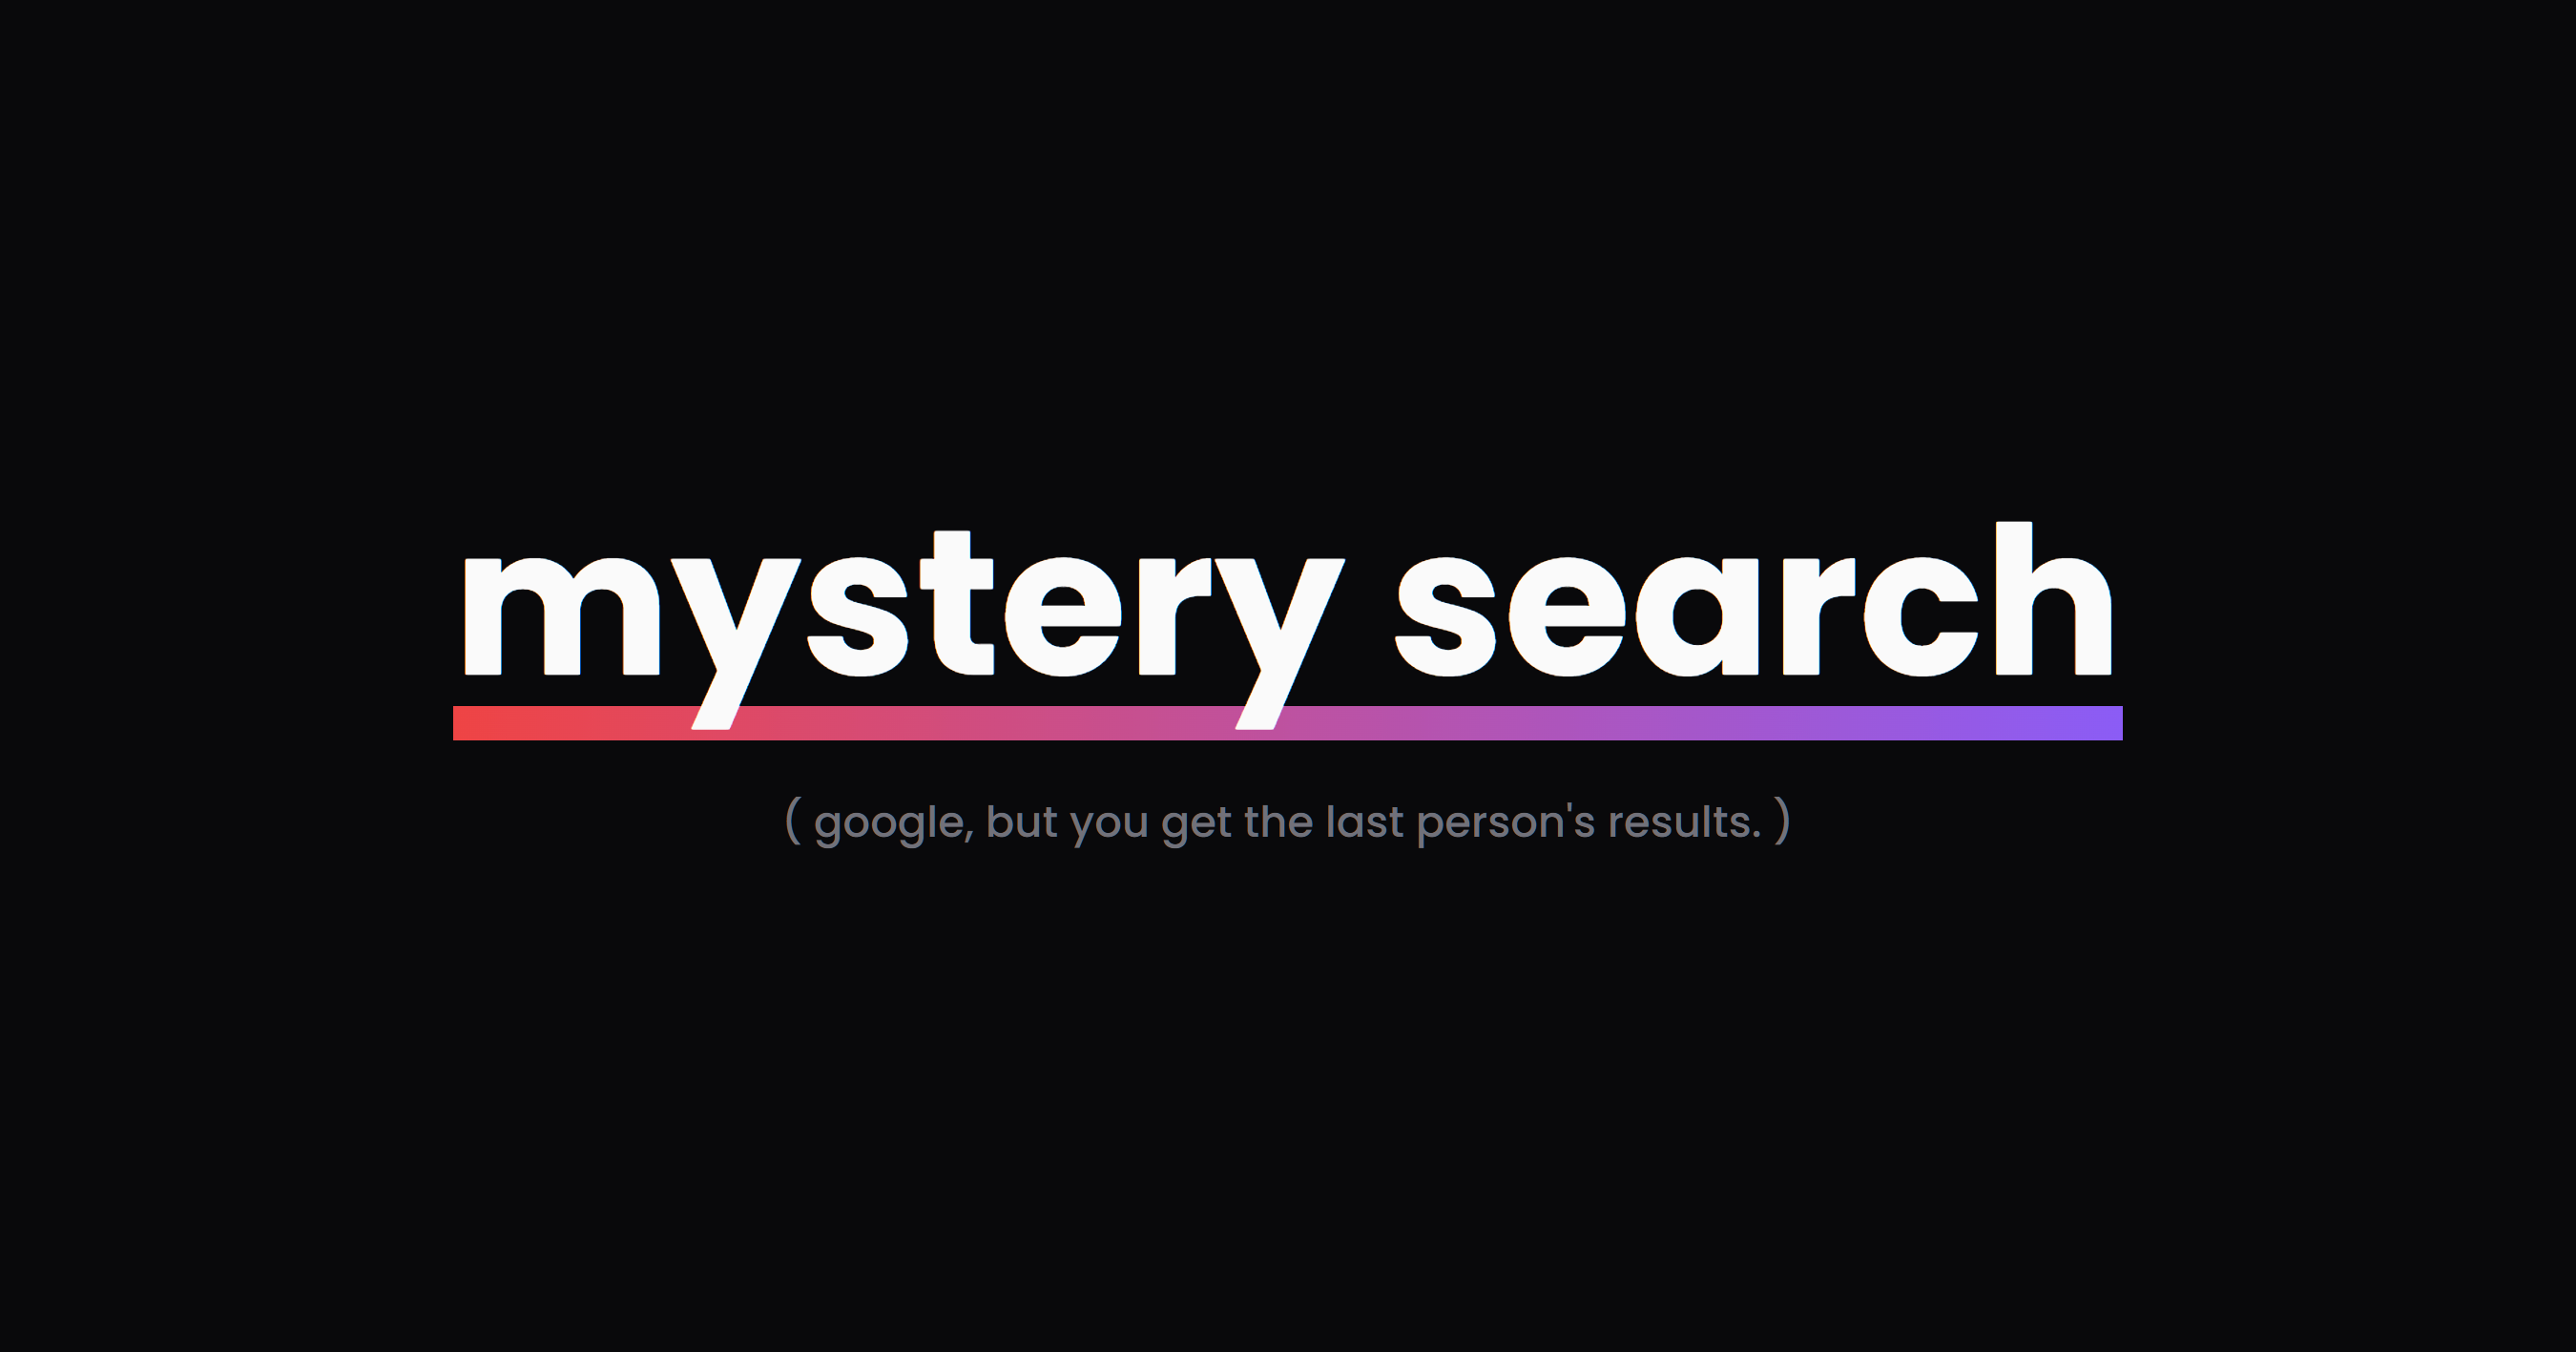 www.mysterysearch.lol